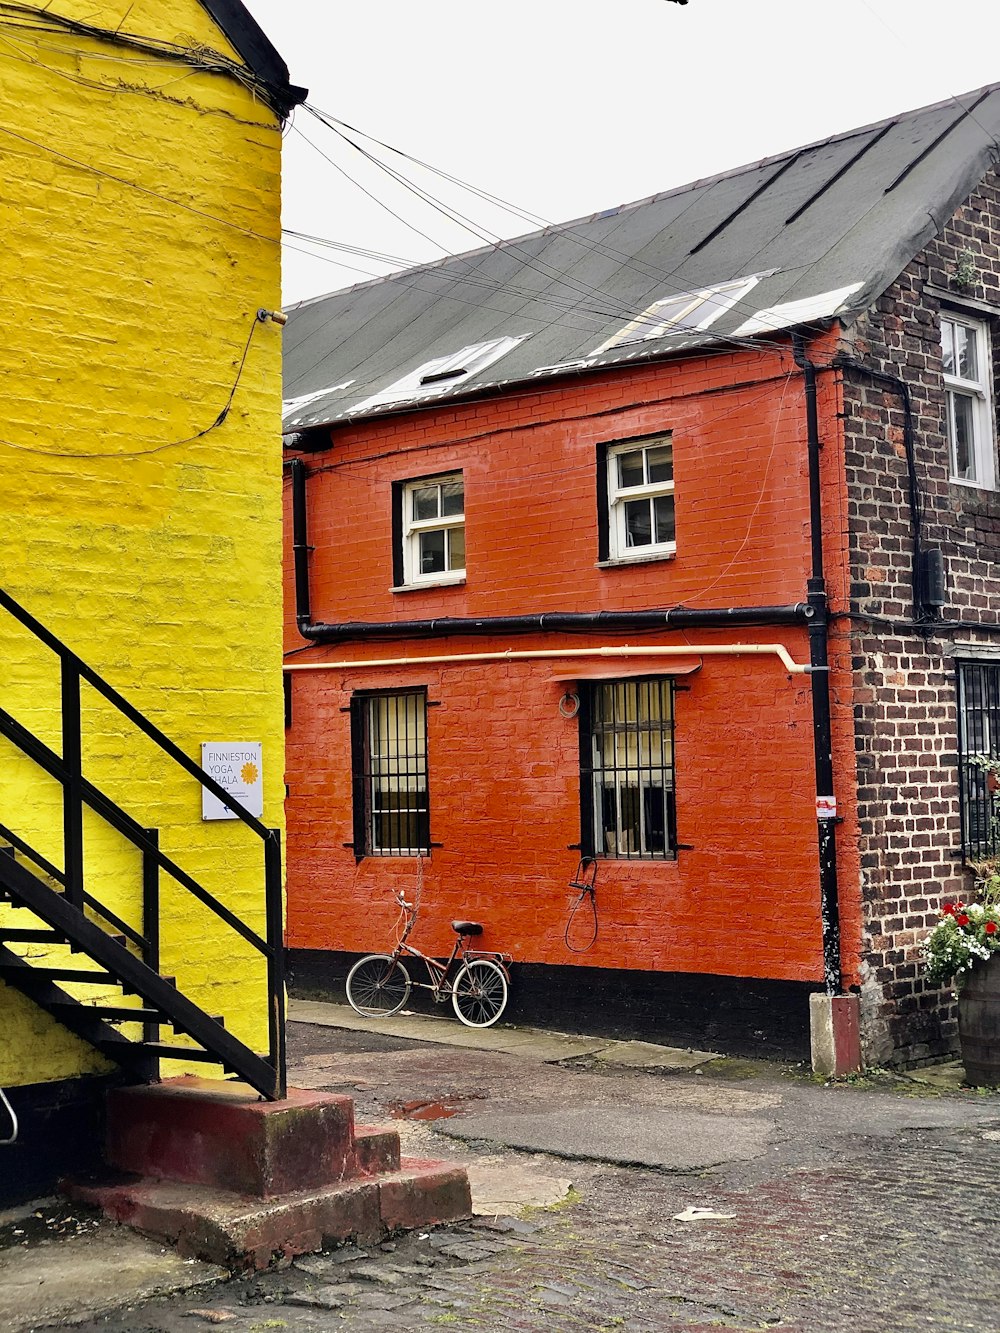 Un edificio rojo y amarillo con una bicicleta estacionada frente a él